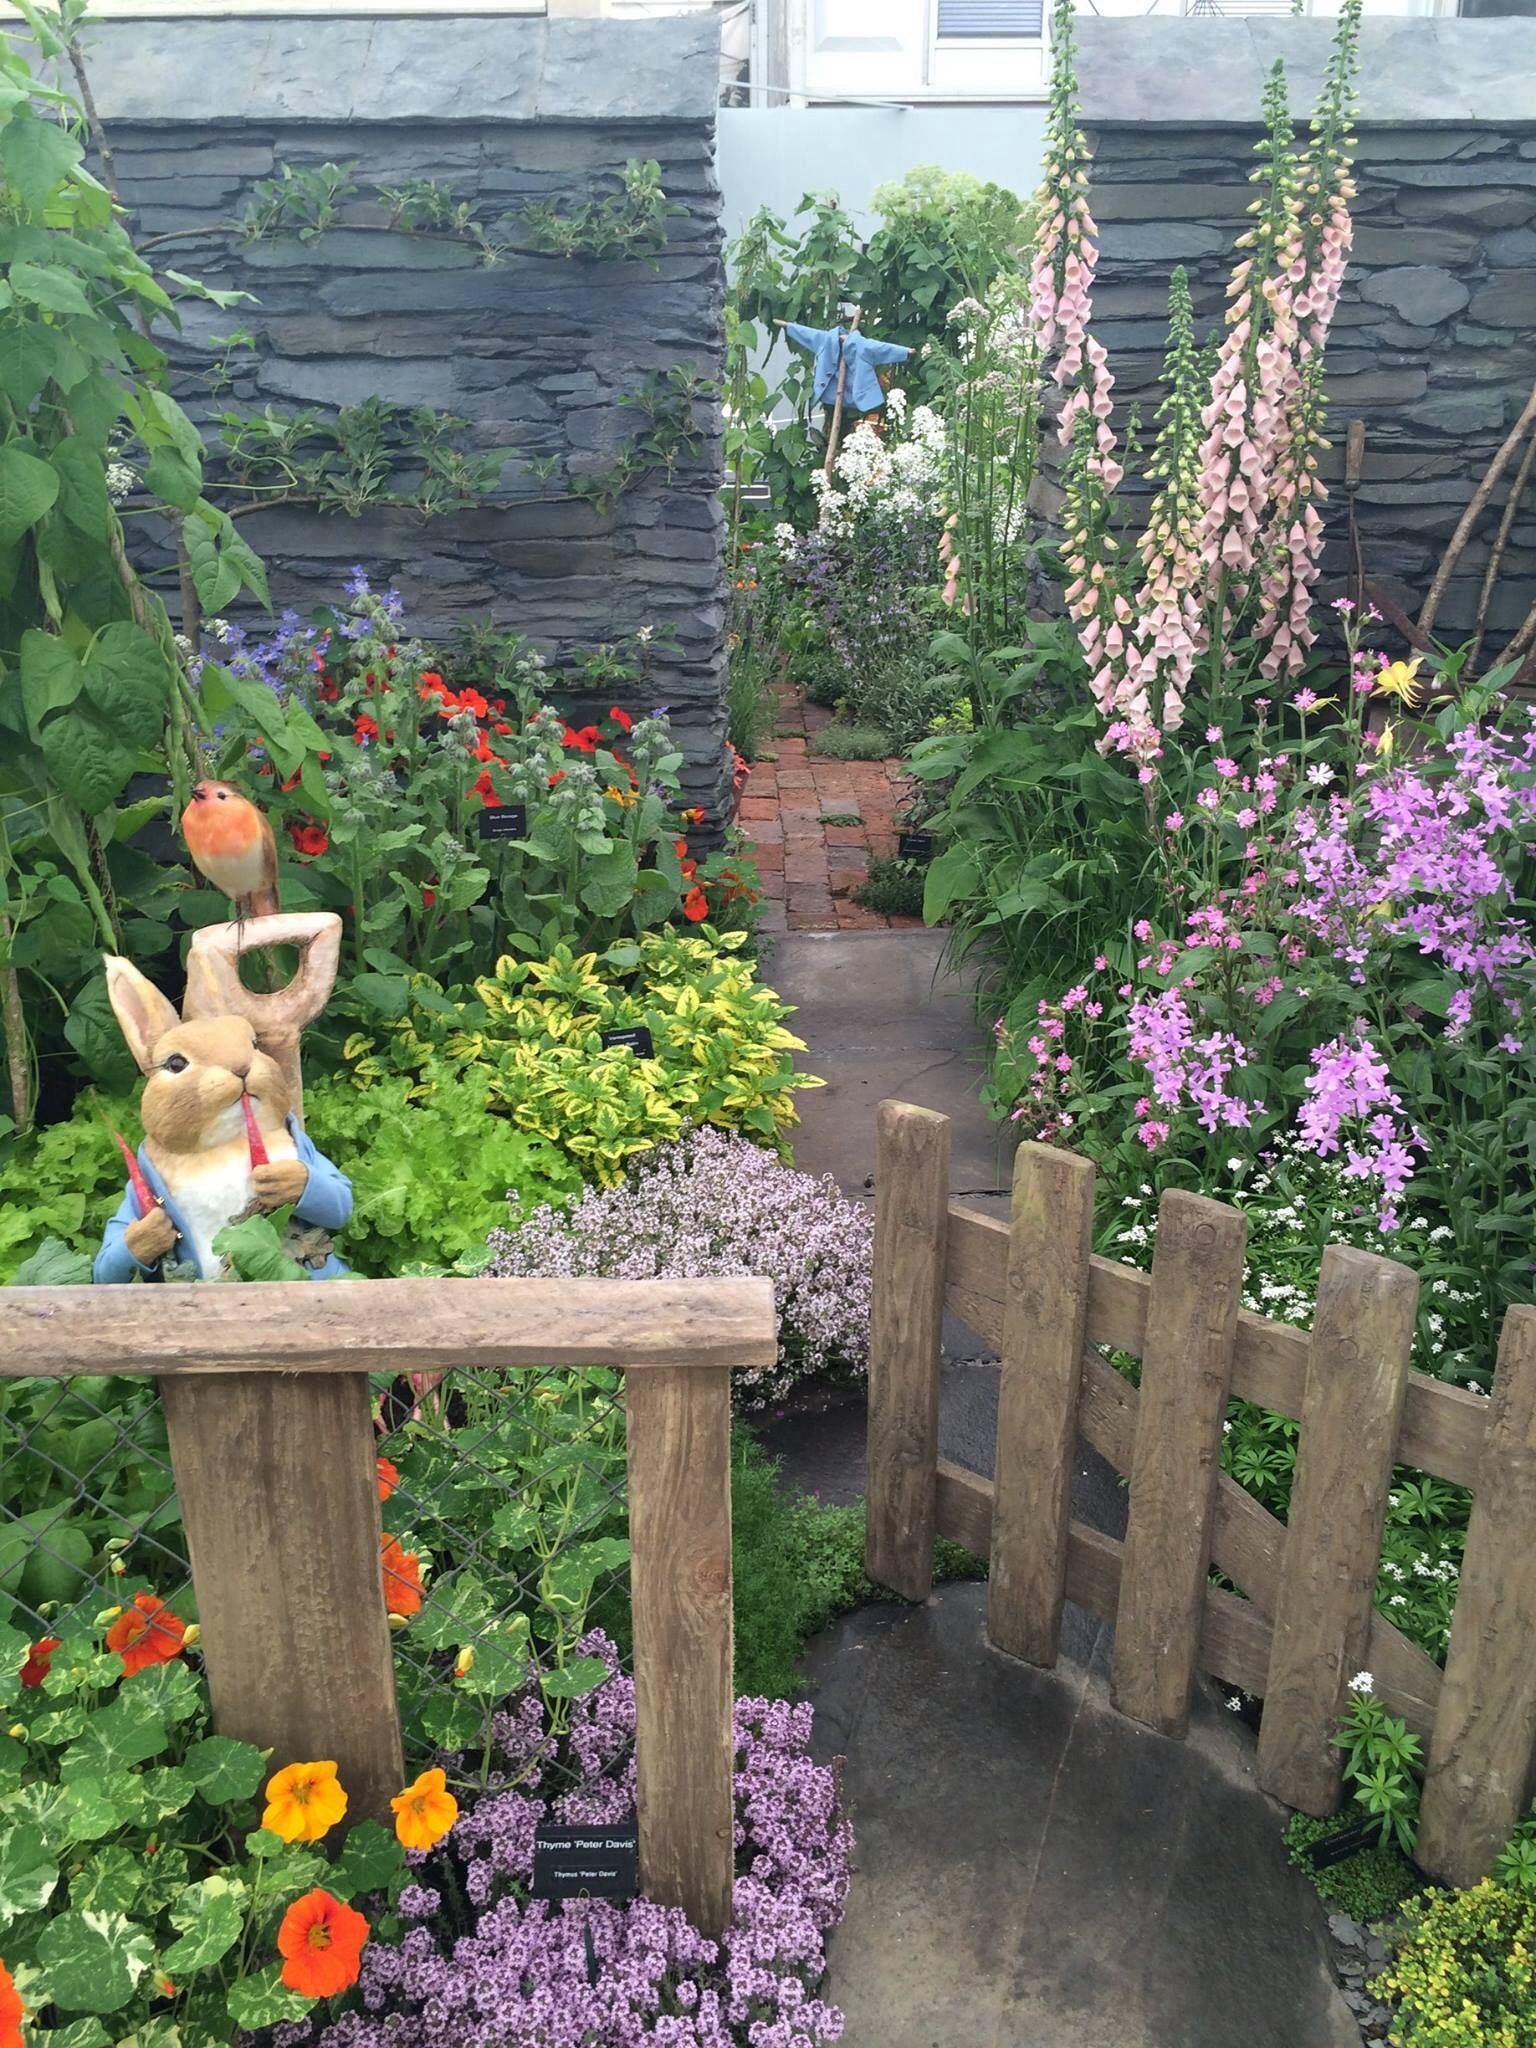 The Peter Rabbit Garden